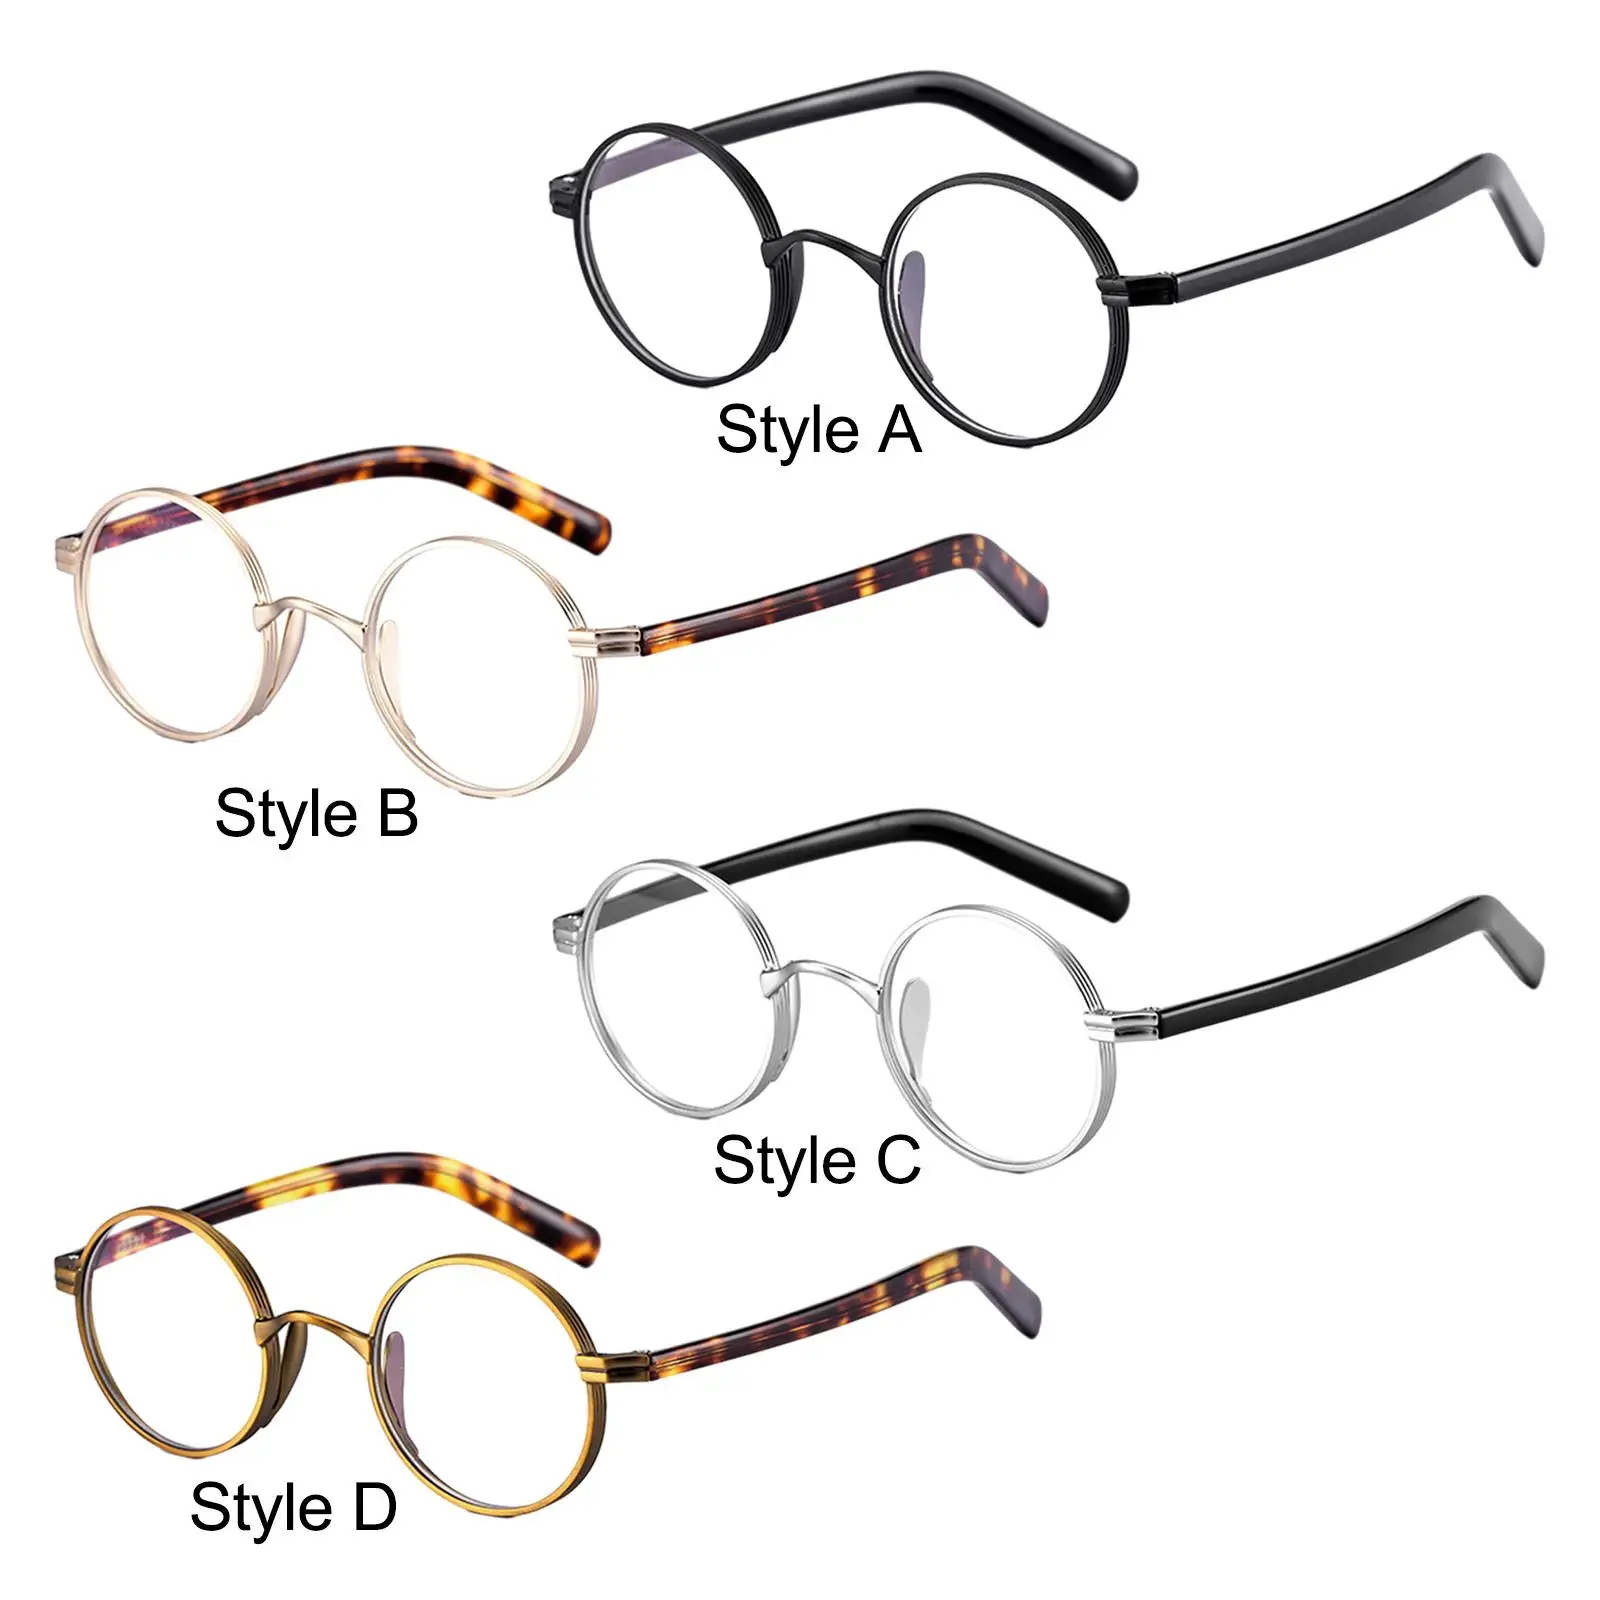 Glasses Frames Comfortable to Wear Ultralight Full Rim Classical Retro for Women Men Oval Round Eyeglasses Frames Eyeglass Frame